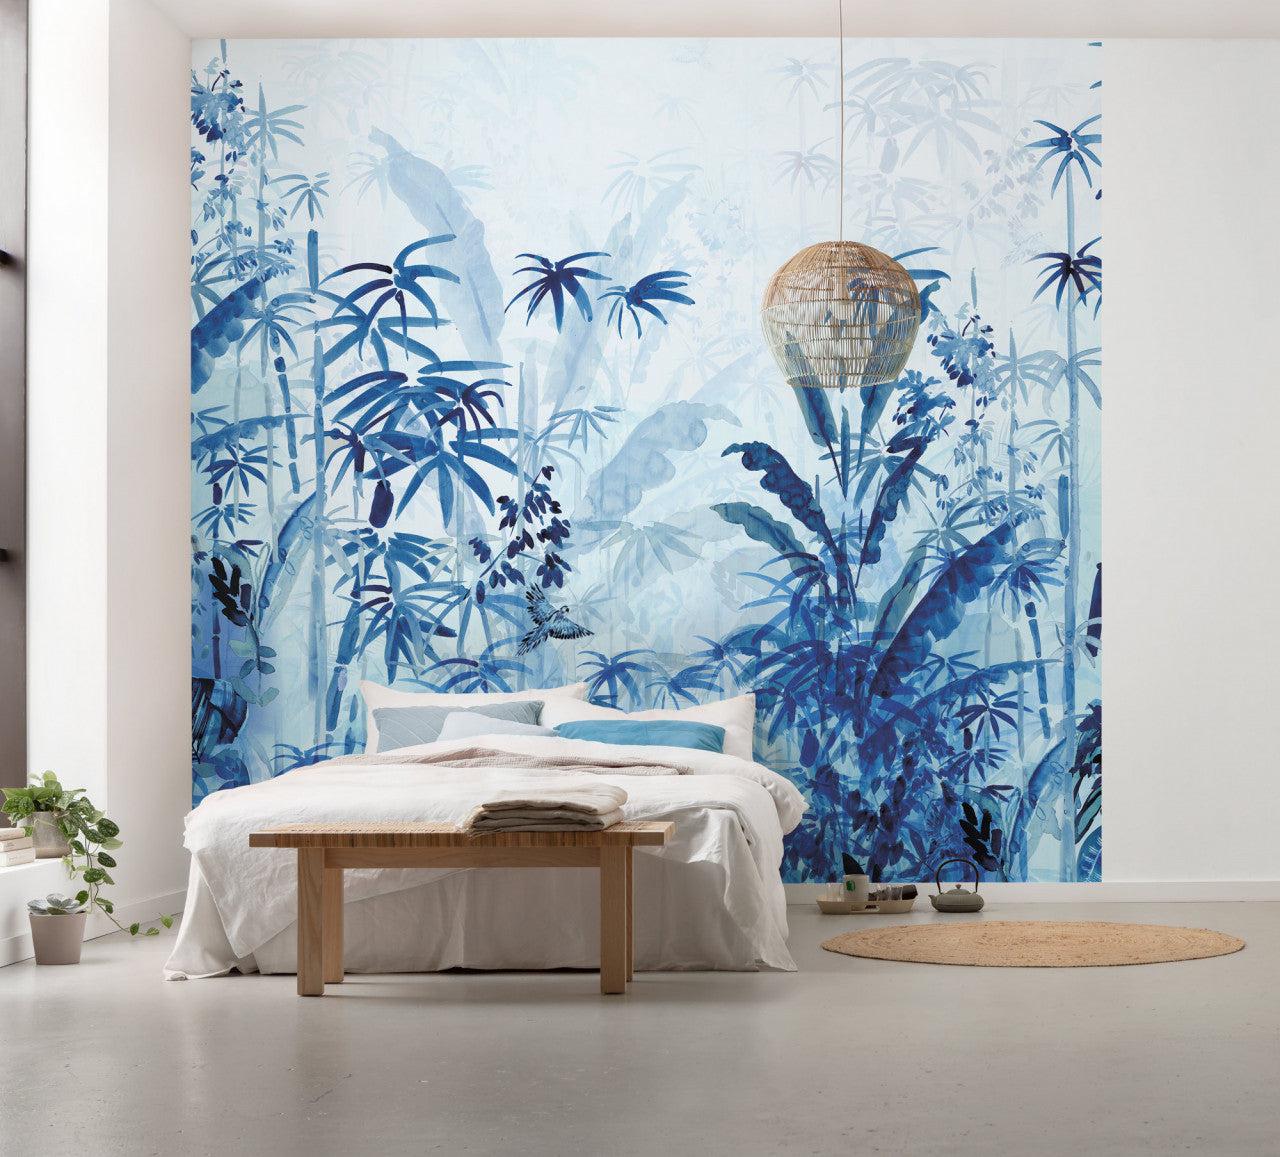 http://www.foresthomesstore.com/cdn/shop/files/Blue-Jungle-Mural-Wallpaper.jpg?v=1693598324